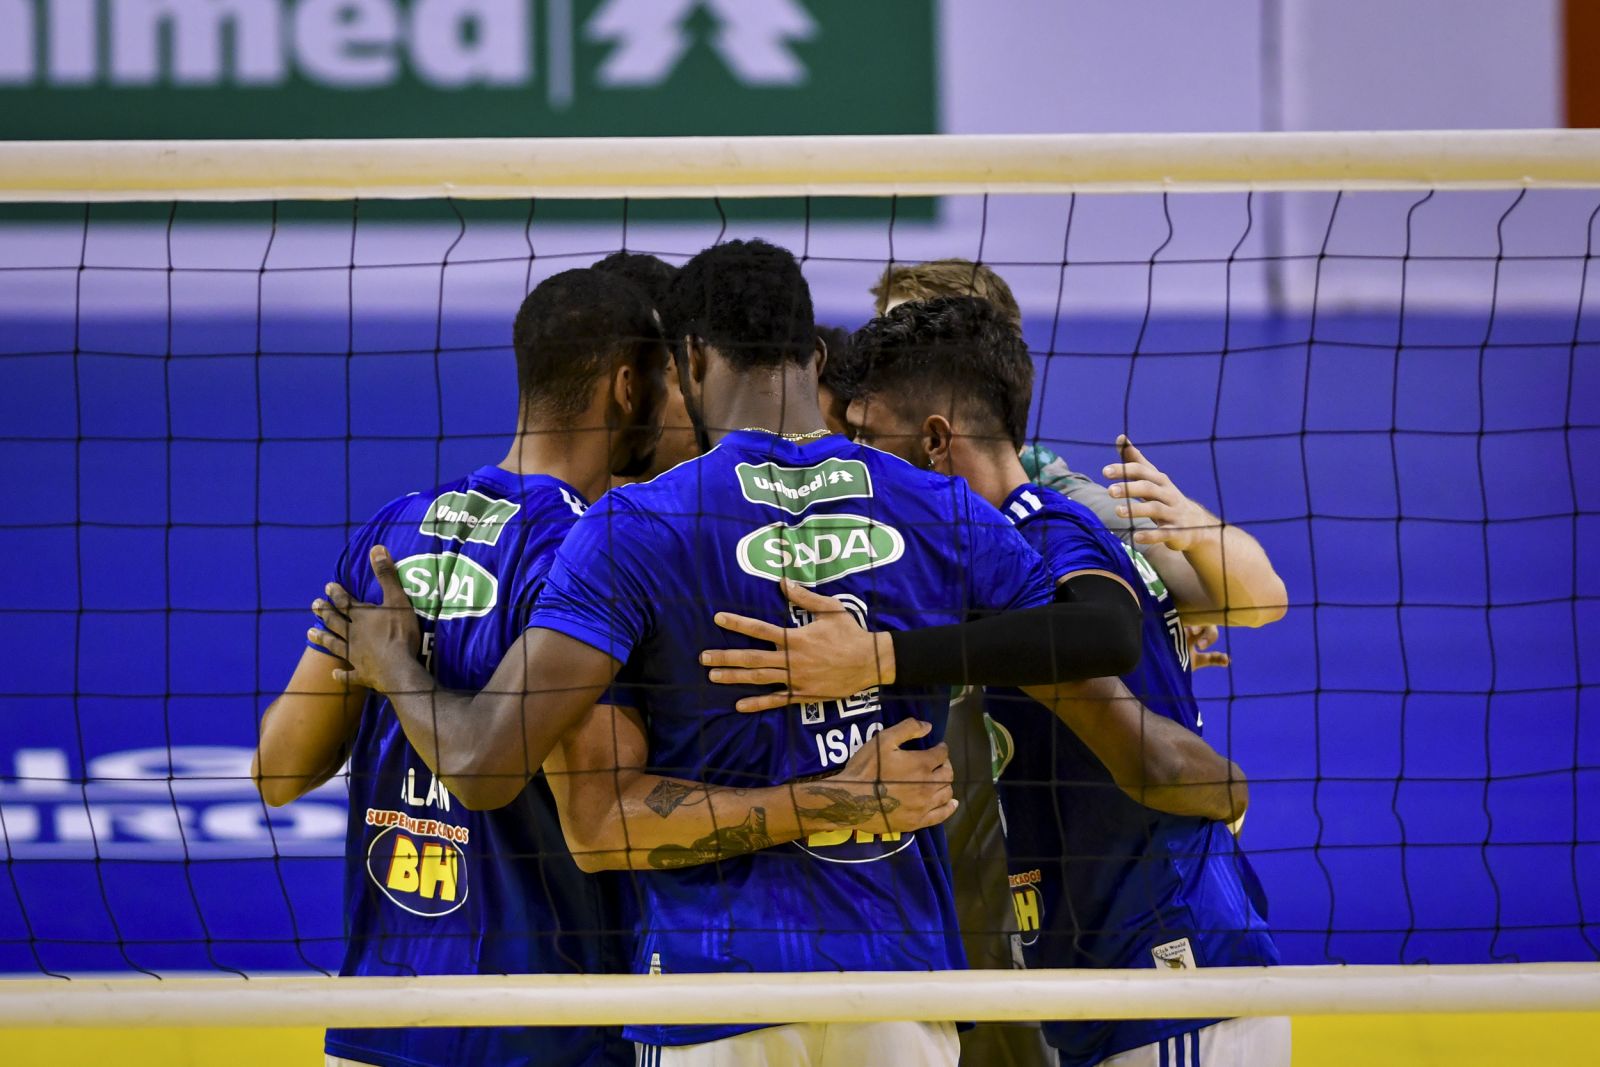 Em Belo Horizonte, Sada Cruzeiro enfrenta o Minas nesta quinta-feira, 21h30